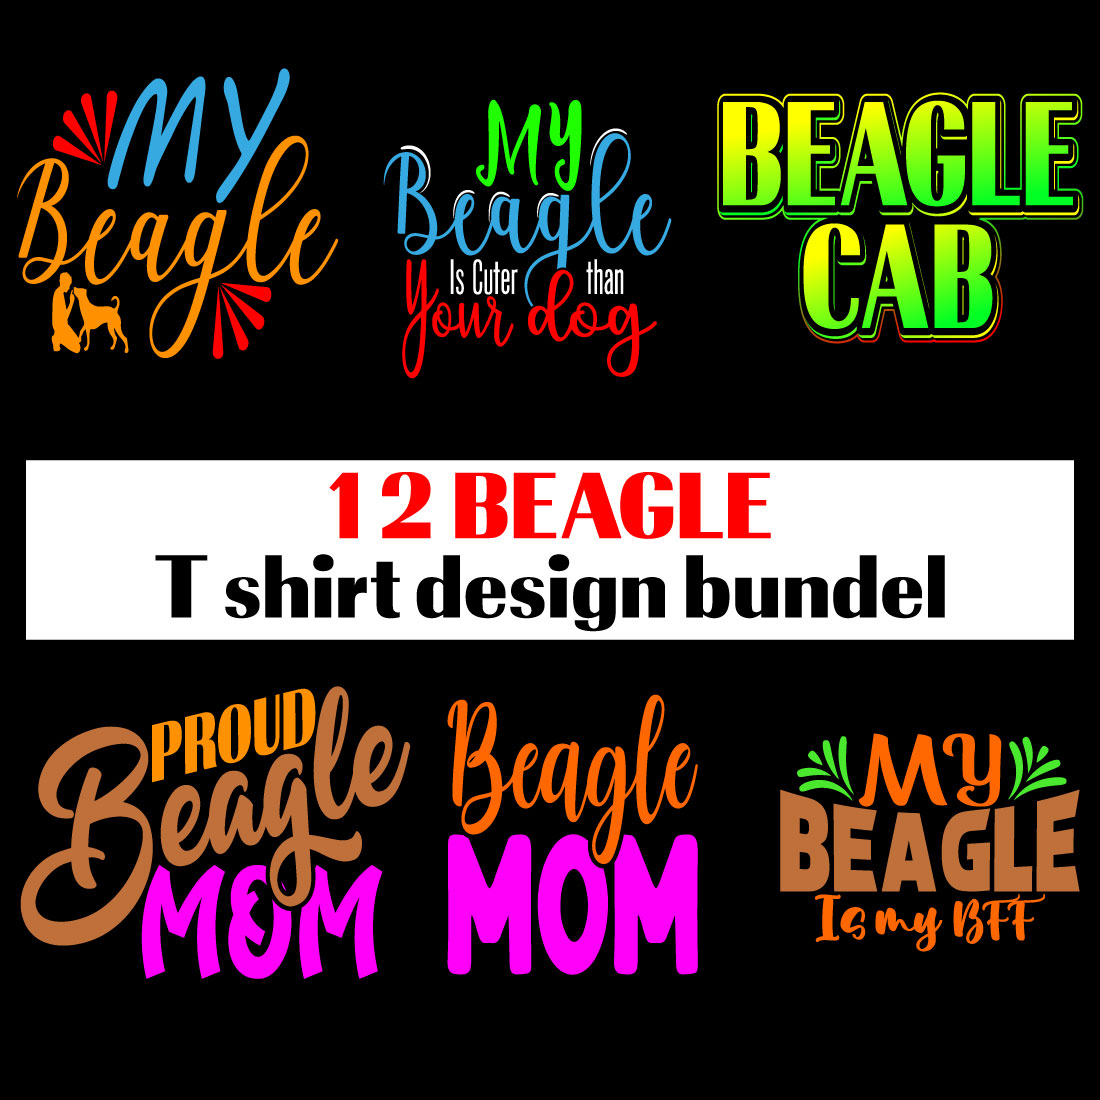 Beagle Dog t shirt design bundel preview image.